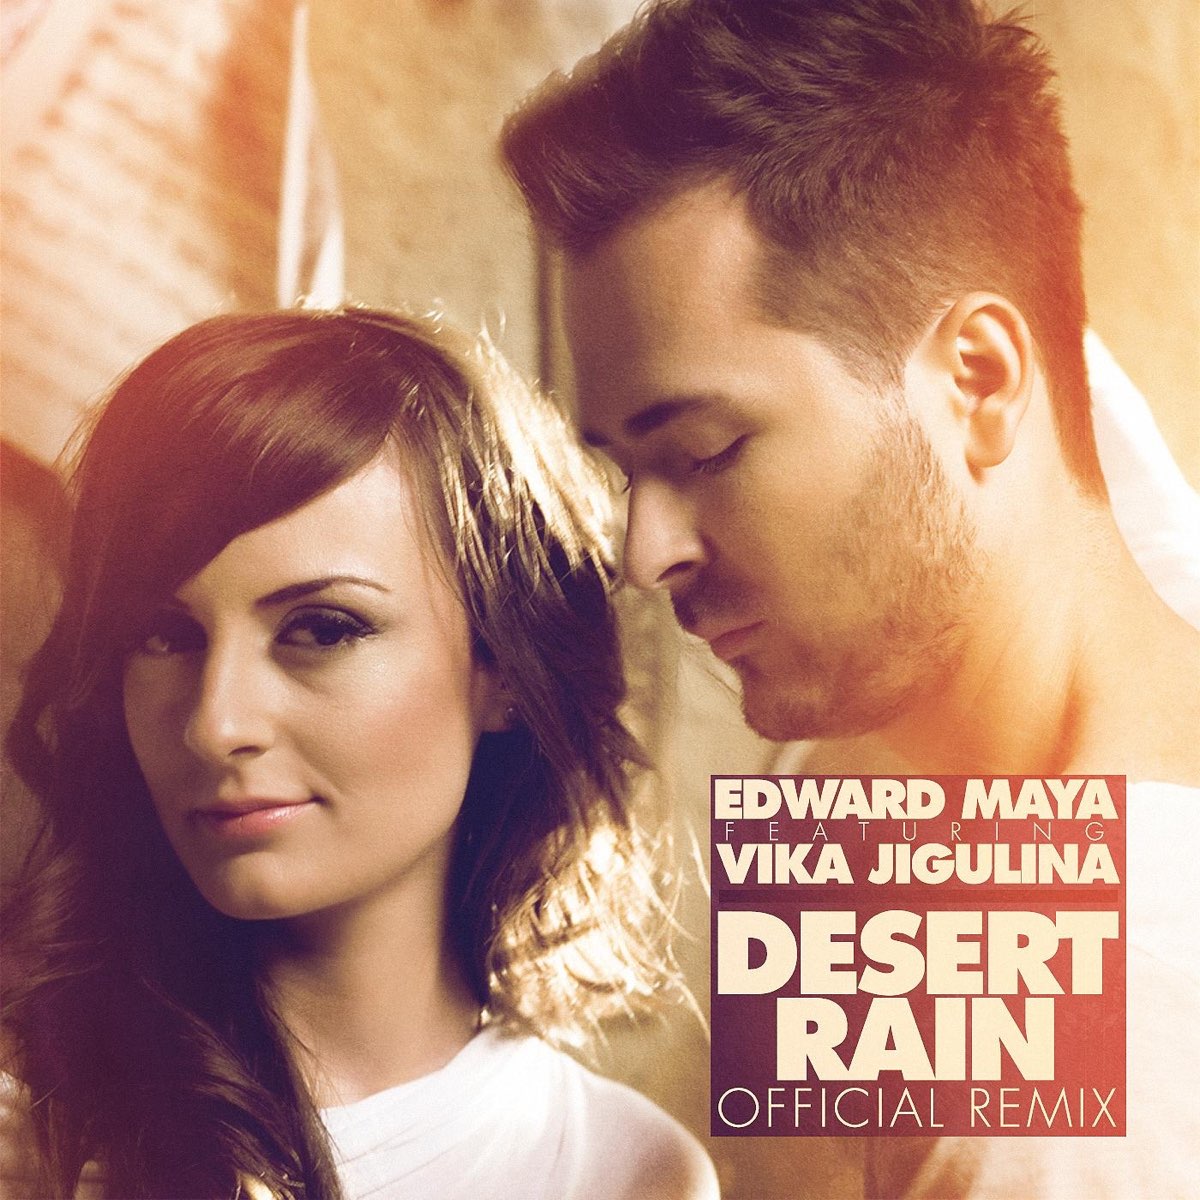 Desert Rain Вика Жигулина. Edward Maya Desert Rain album.